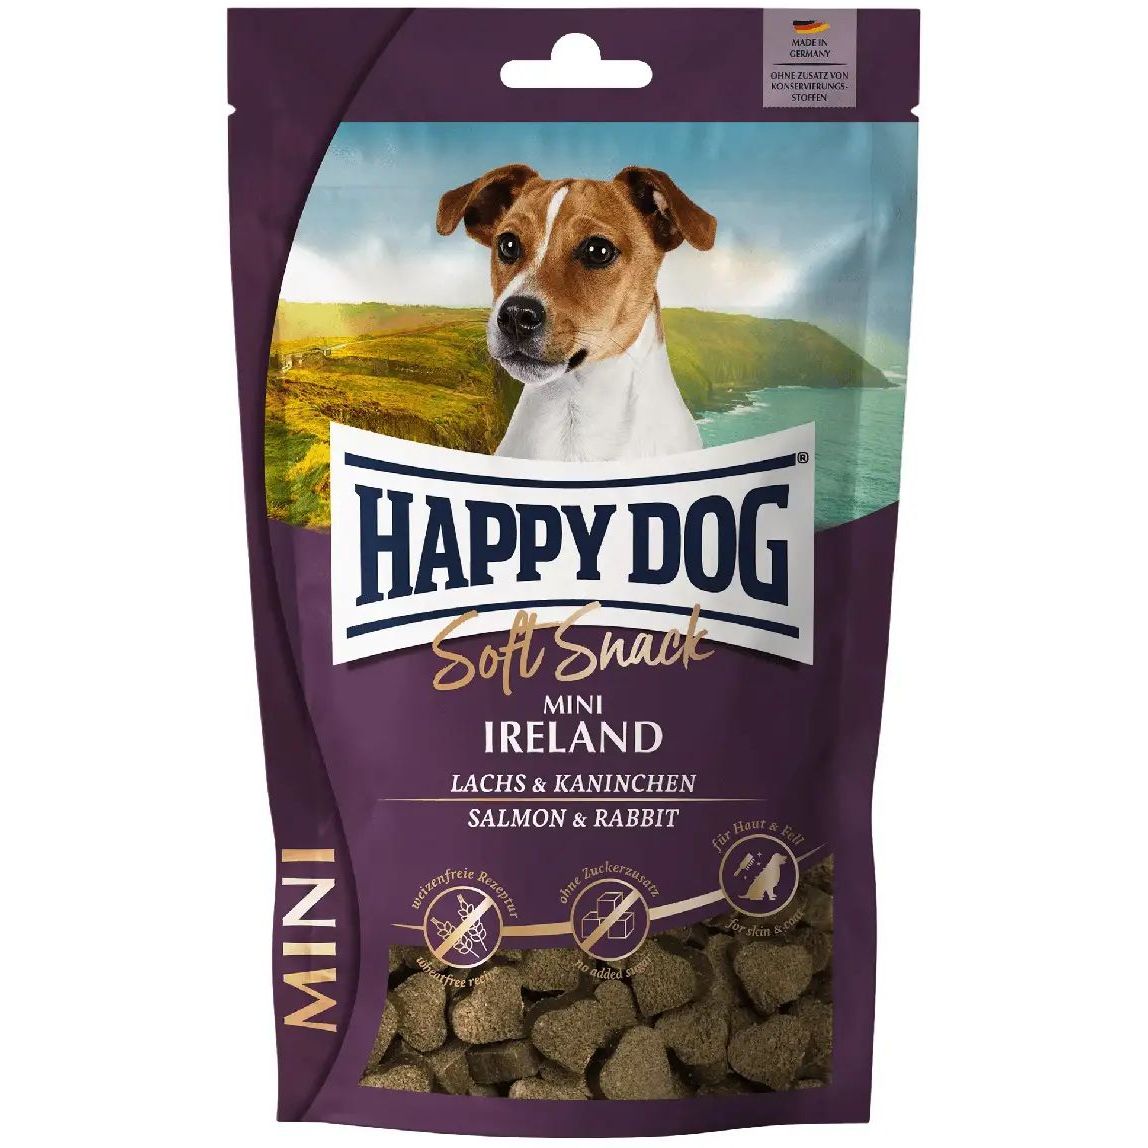 Лакомство для собак Happy Dog Soft Snack Mini Ireland мягкие со вкусом лосося и кролика, 100 г - фото 1